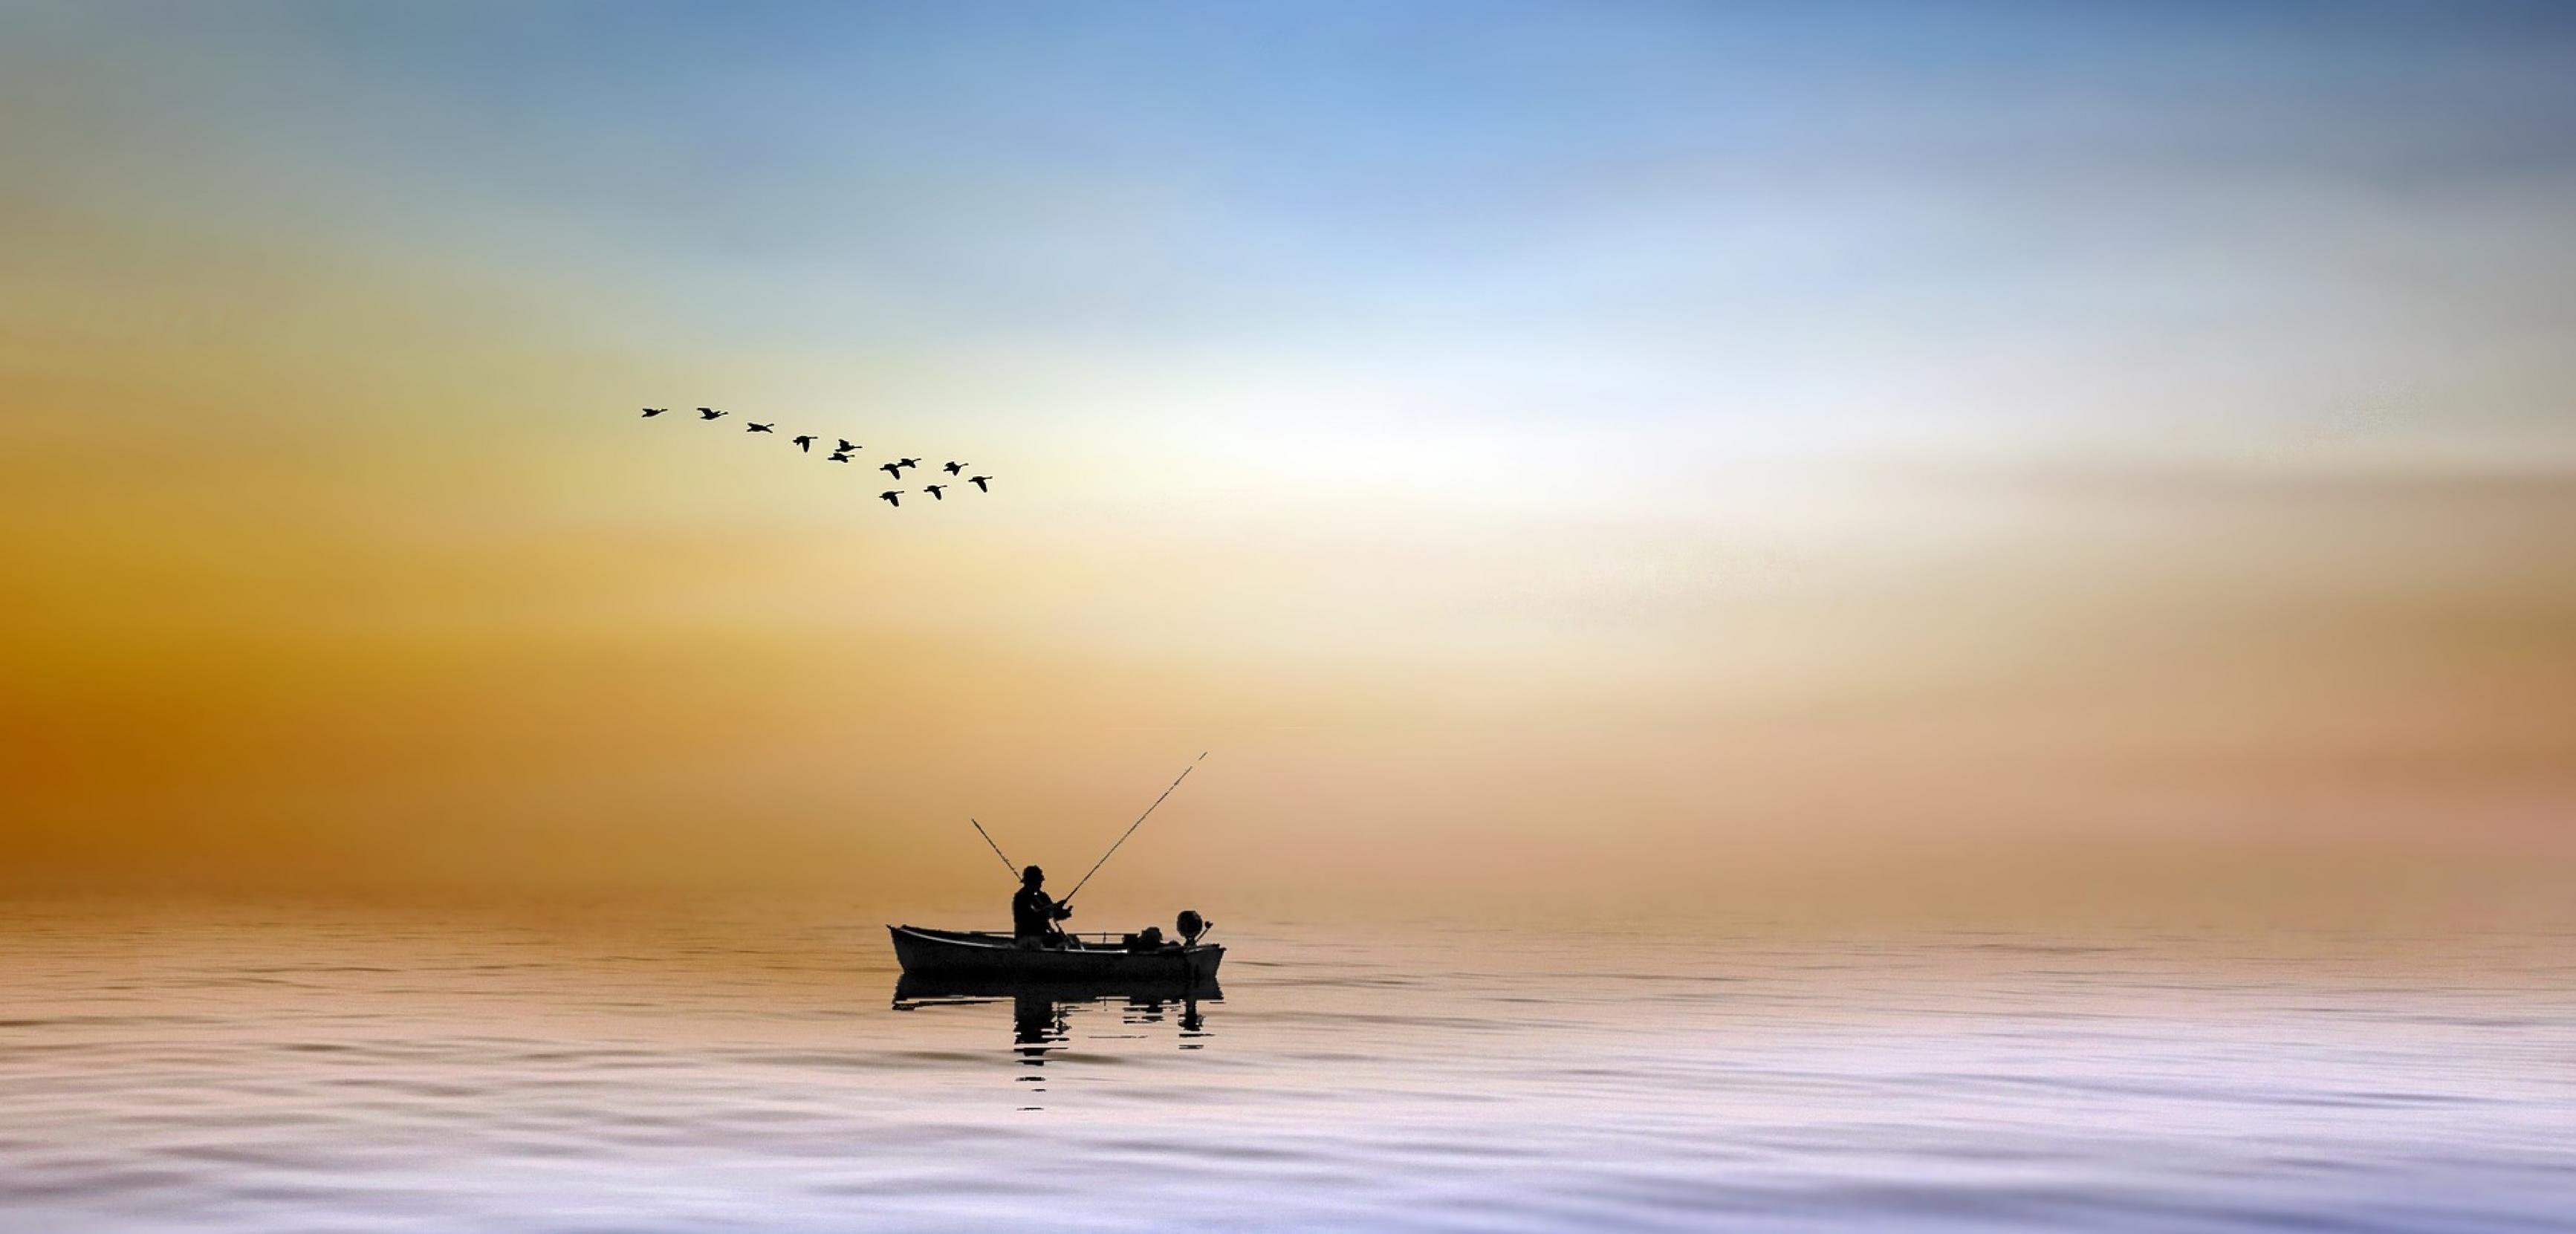 Ein einsames kleines Ruderboot auf ruhiger See, darüber fliegende Seevögel.